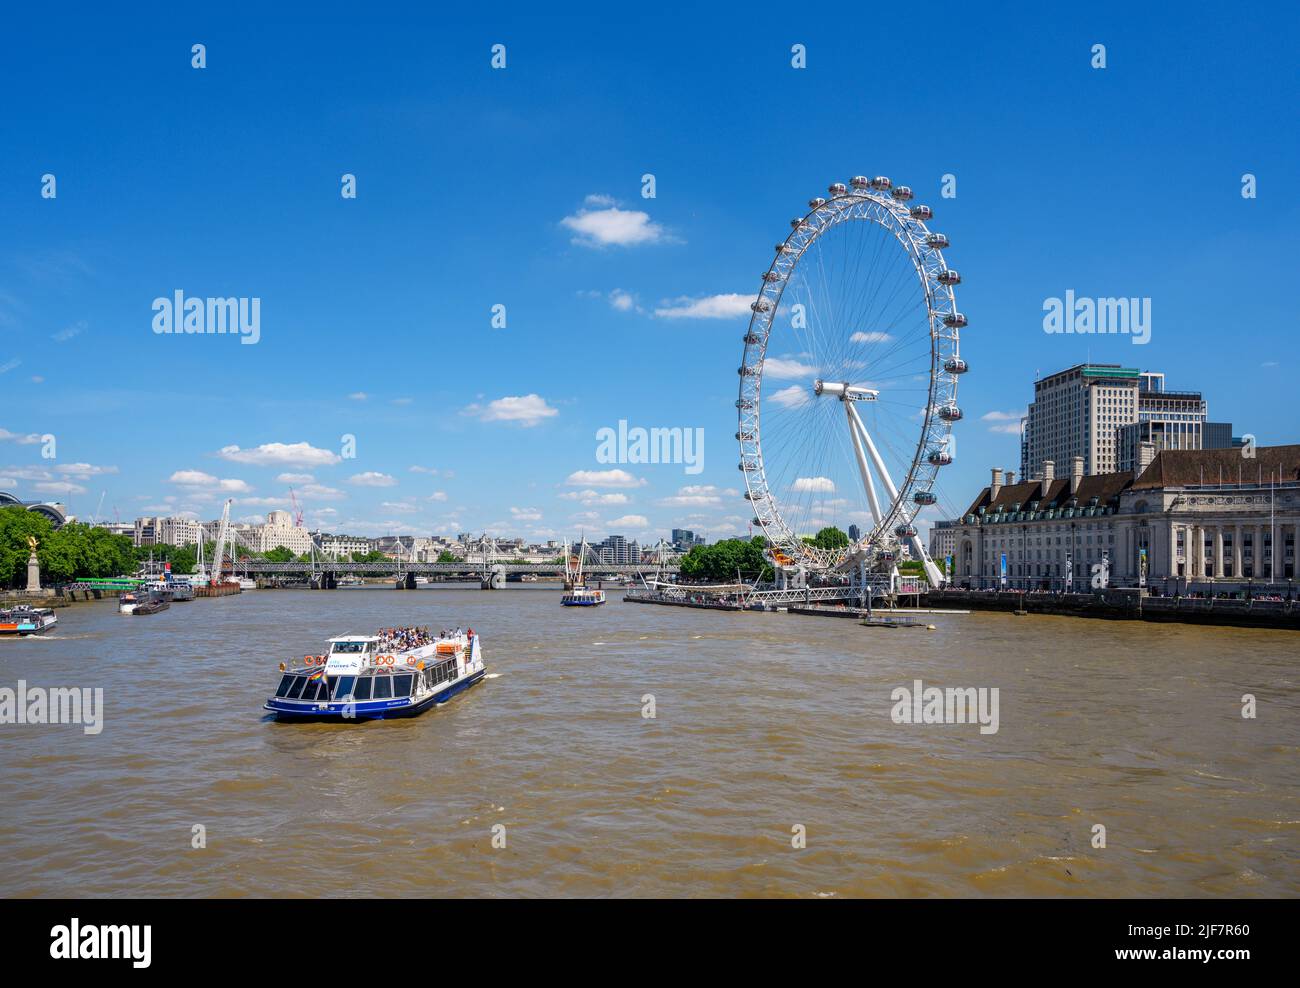 El London Eye y el City Cruises en barco desde el puente Westminster Bridge, el río Támesis, Londres, Inglaterra, Reino Unido Foto de stock